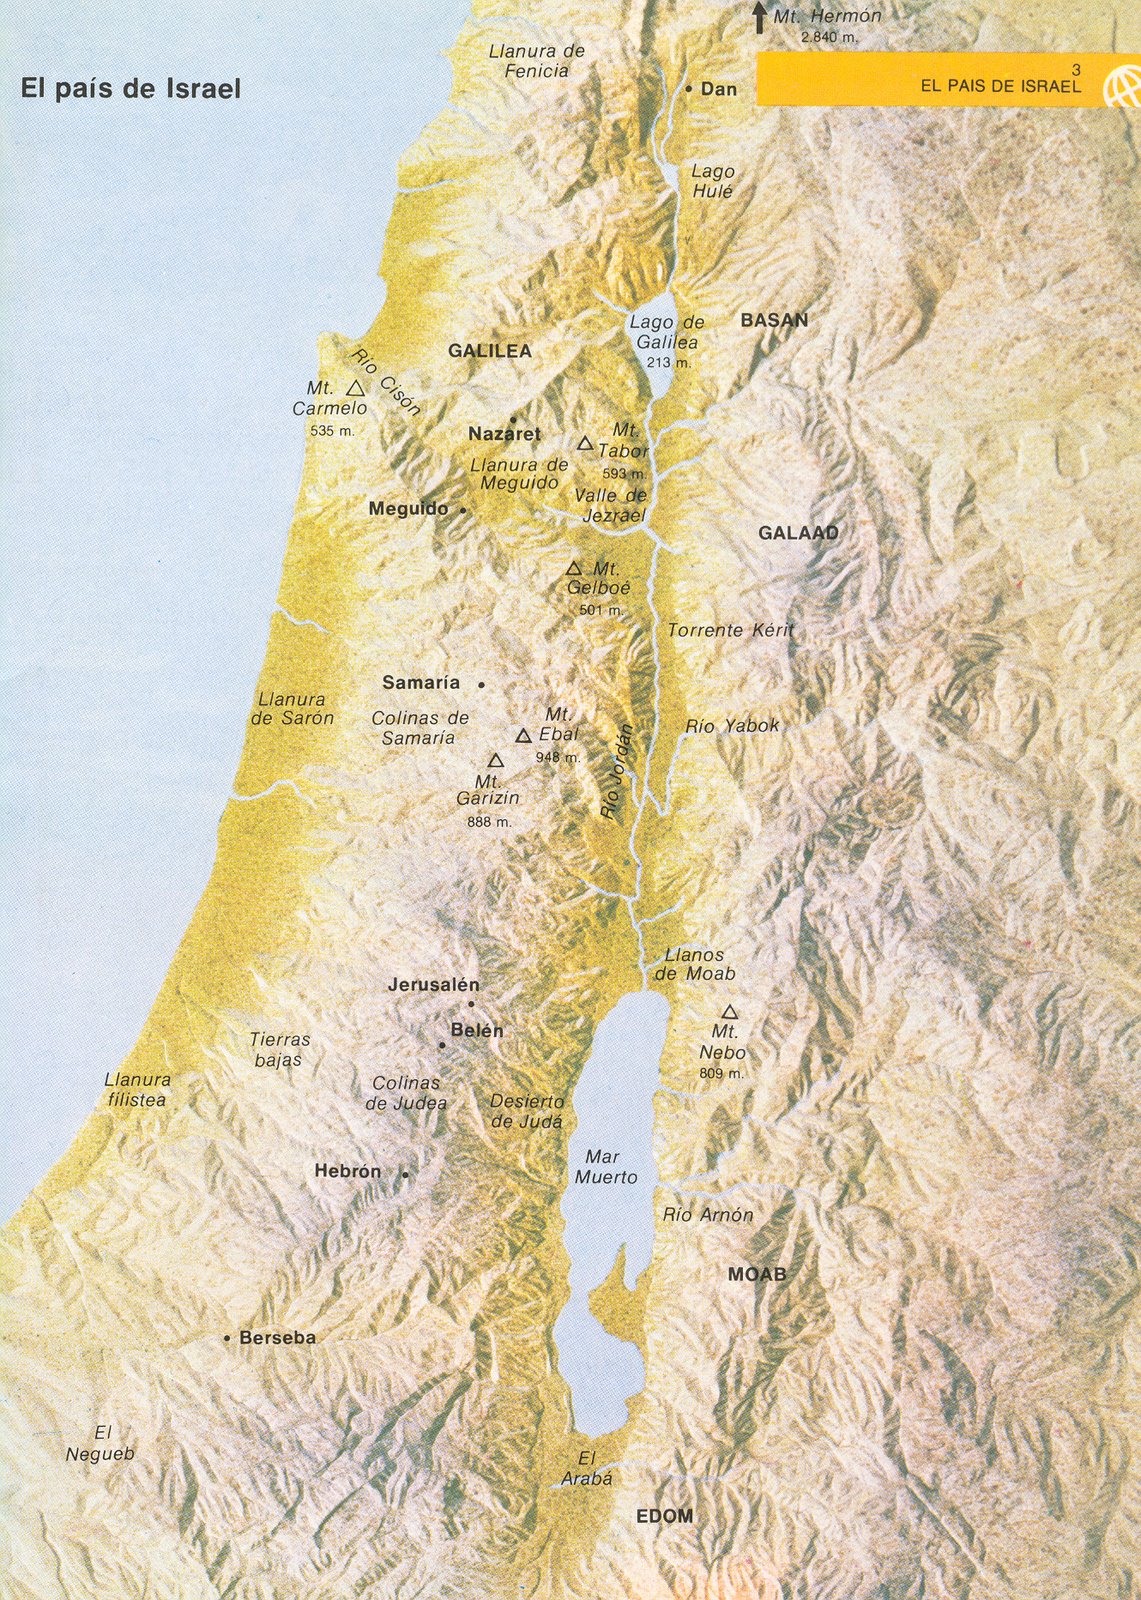 http://2.bp.blogspot.com/_aIUf2DIktHM/R1REhRgKk-I/AAAAAAAAAAU/cZW2_EKWR4w/s1600-R/Mapa+de+Israel.jpg